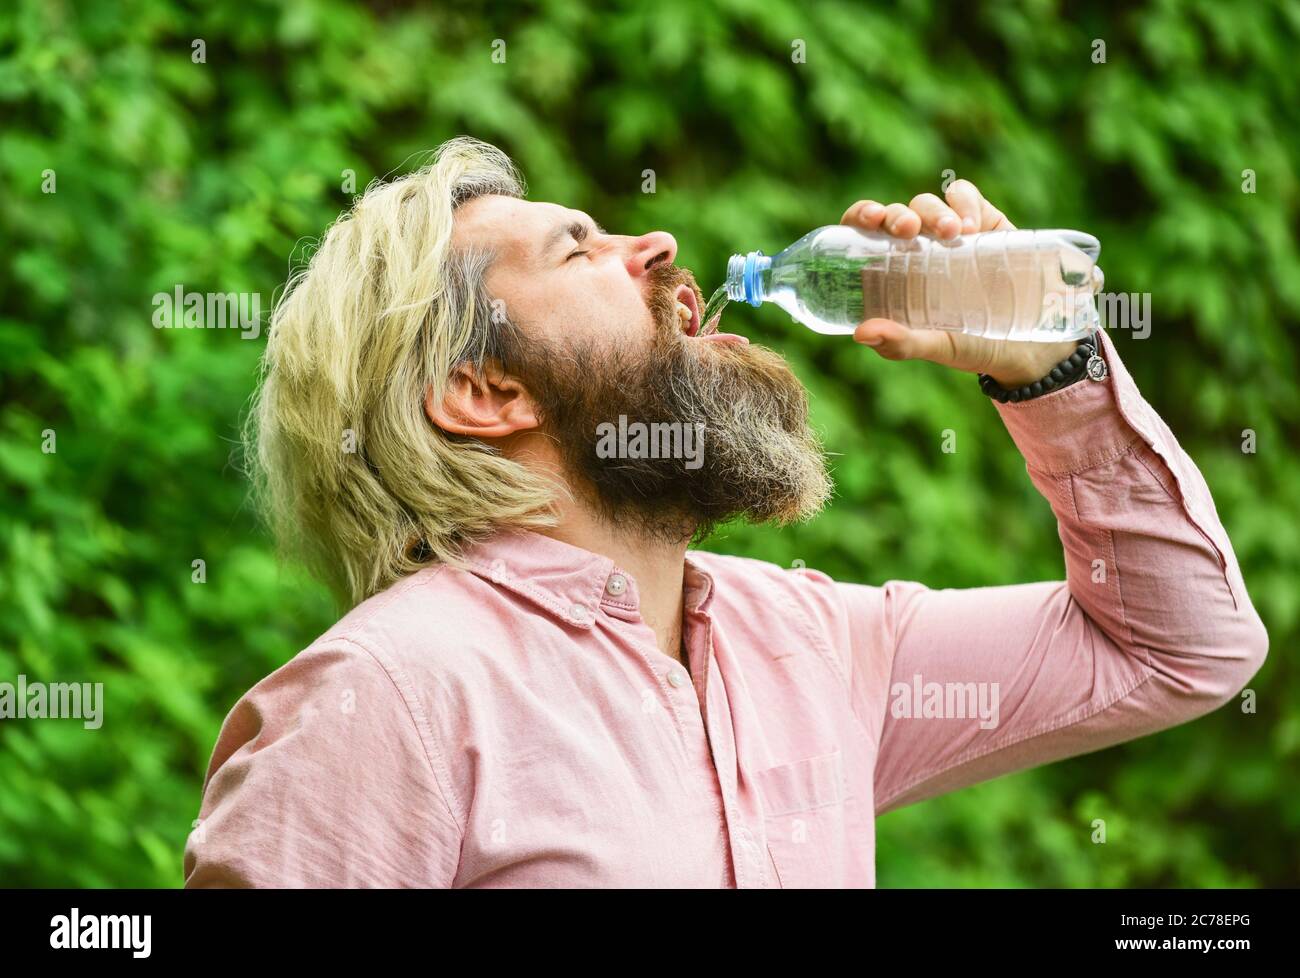 Chaleur estivale. Boire de l'eau claire. Équilibre de l'eau. Homme barbu touriste eau potable bouteille plastique nature fond. Un gars assoiffé qui boit de l'eau en bouteille Un mode de vie sain. Sécurité et santé. Banque D'Images